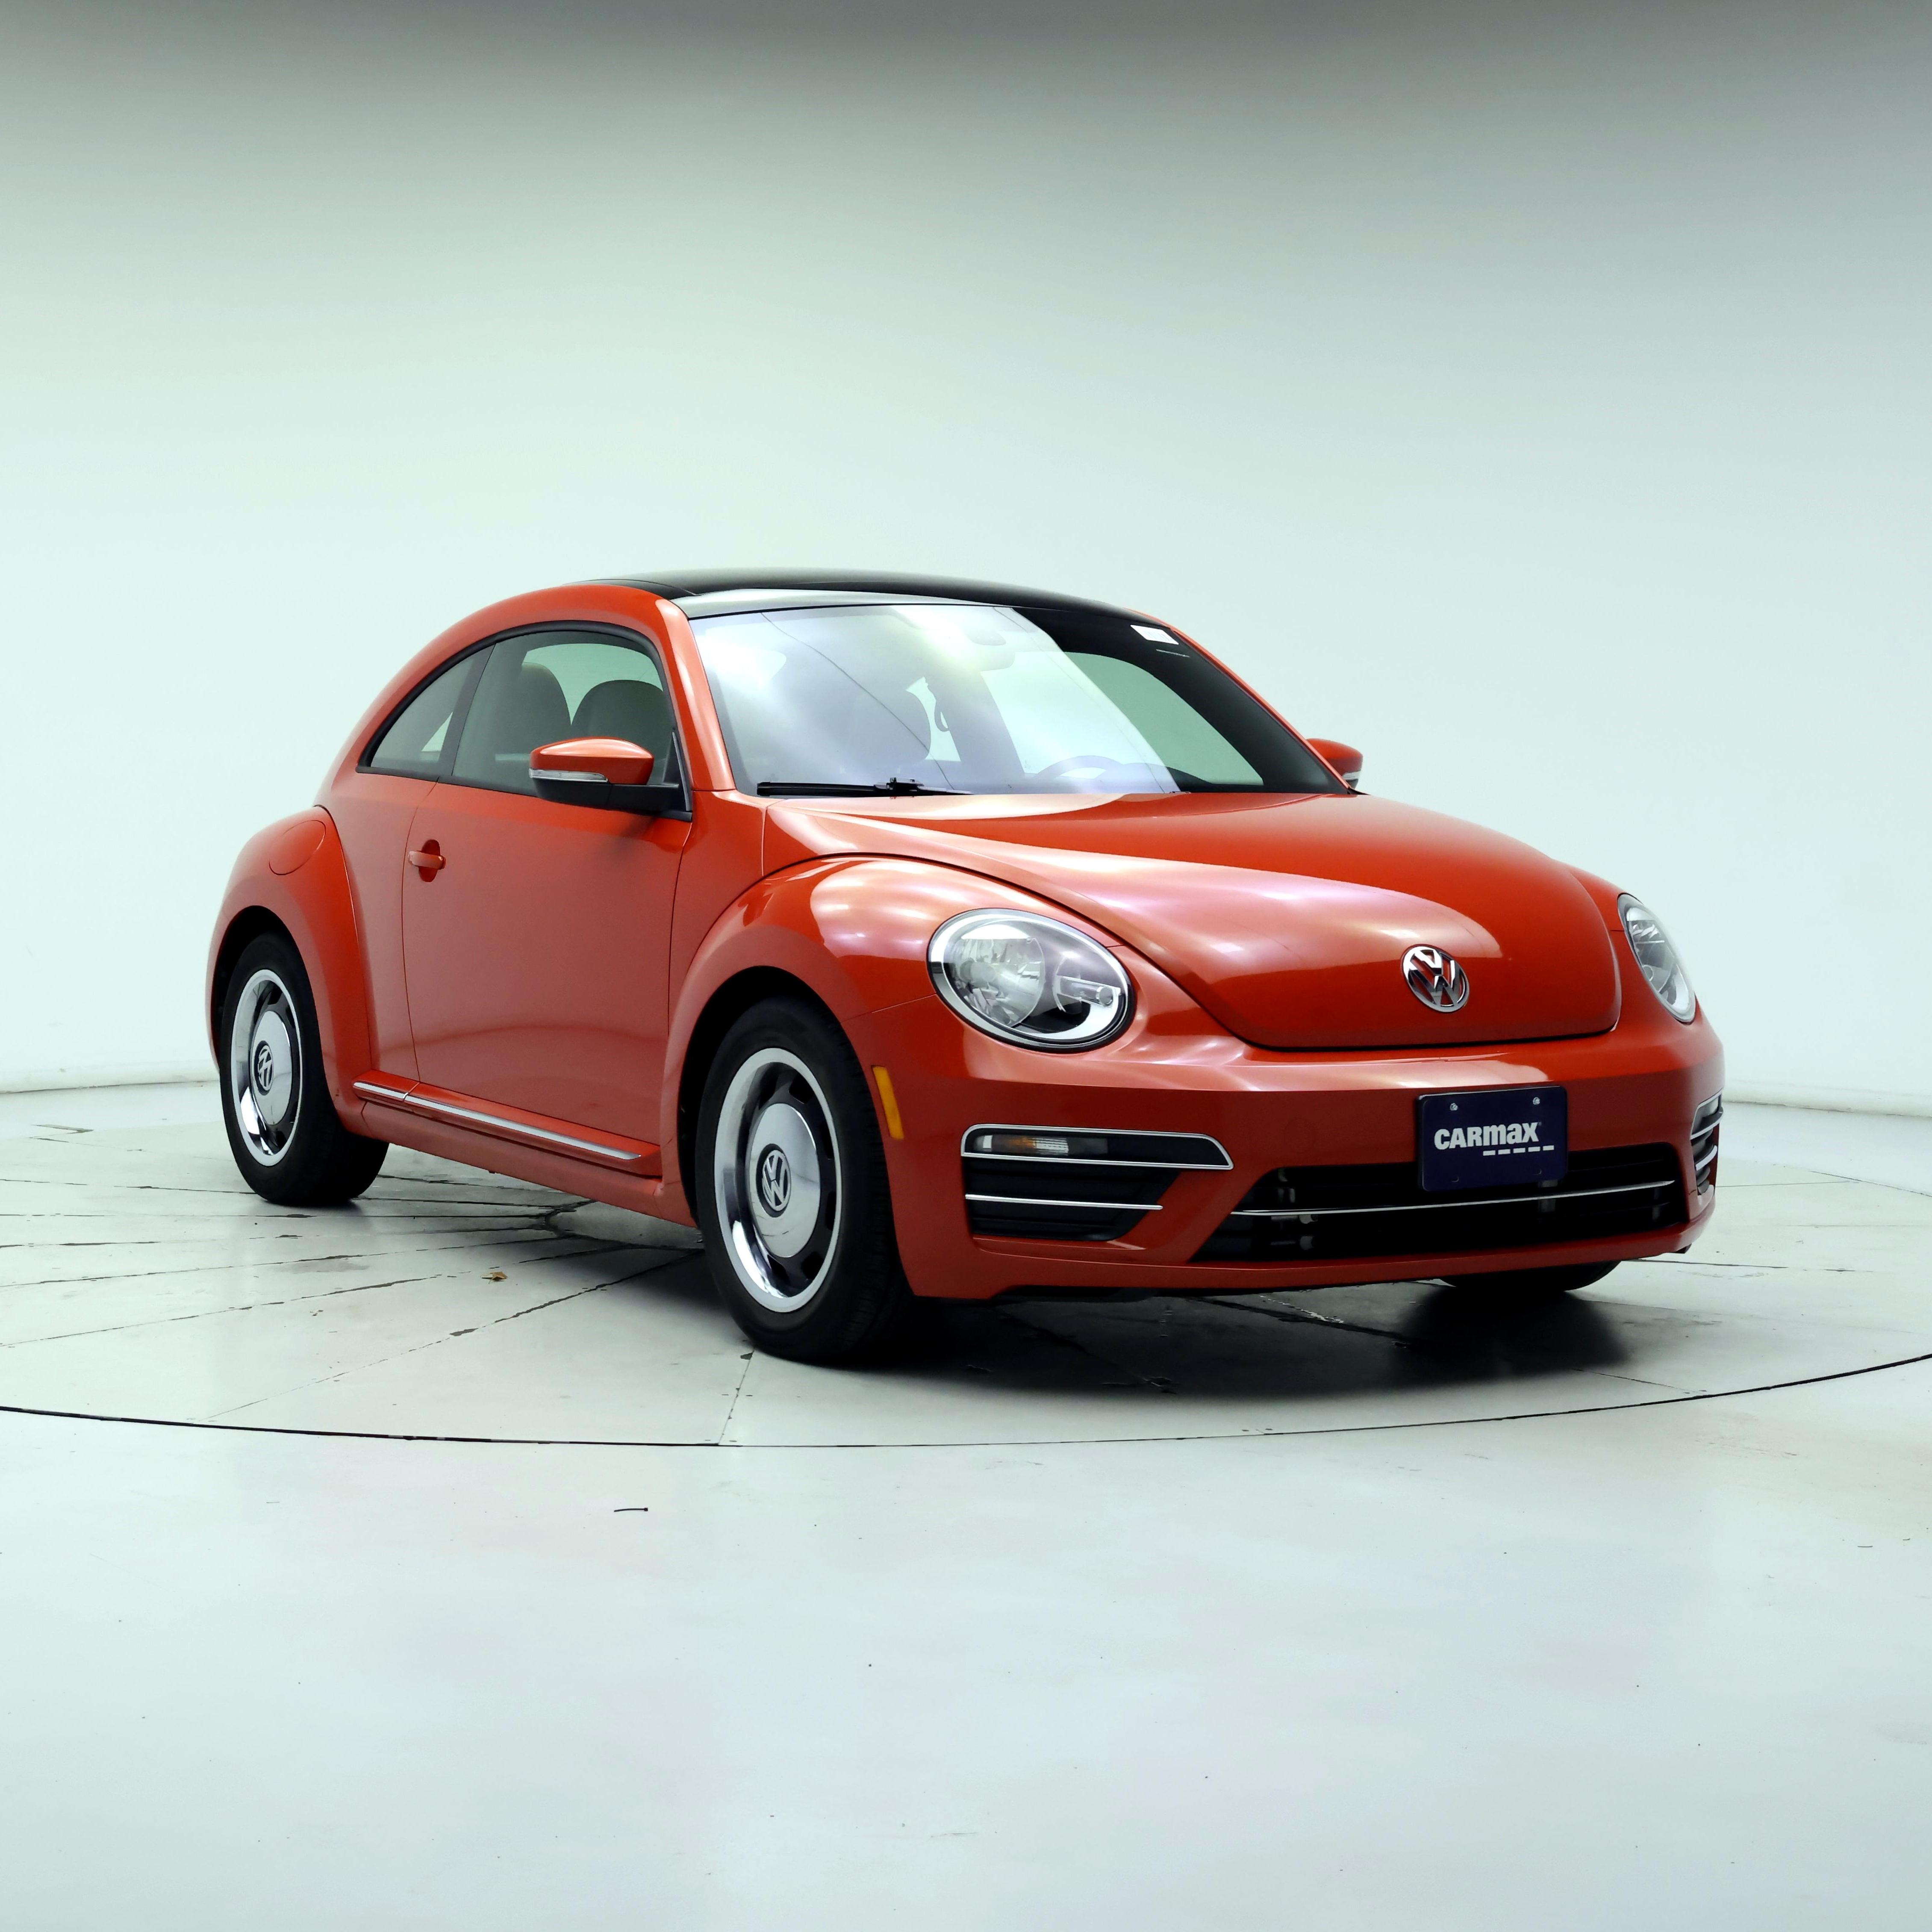 2018 Volkswagen Beetle 2.0T S Hatchback FWD